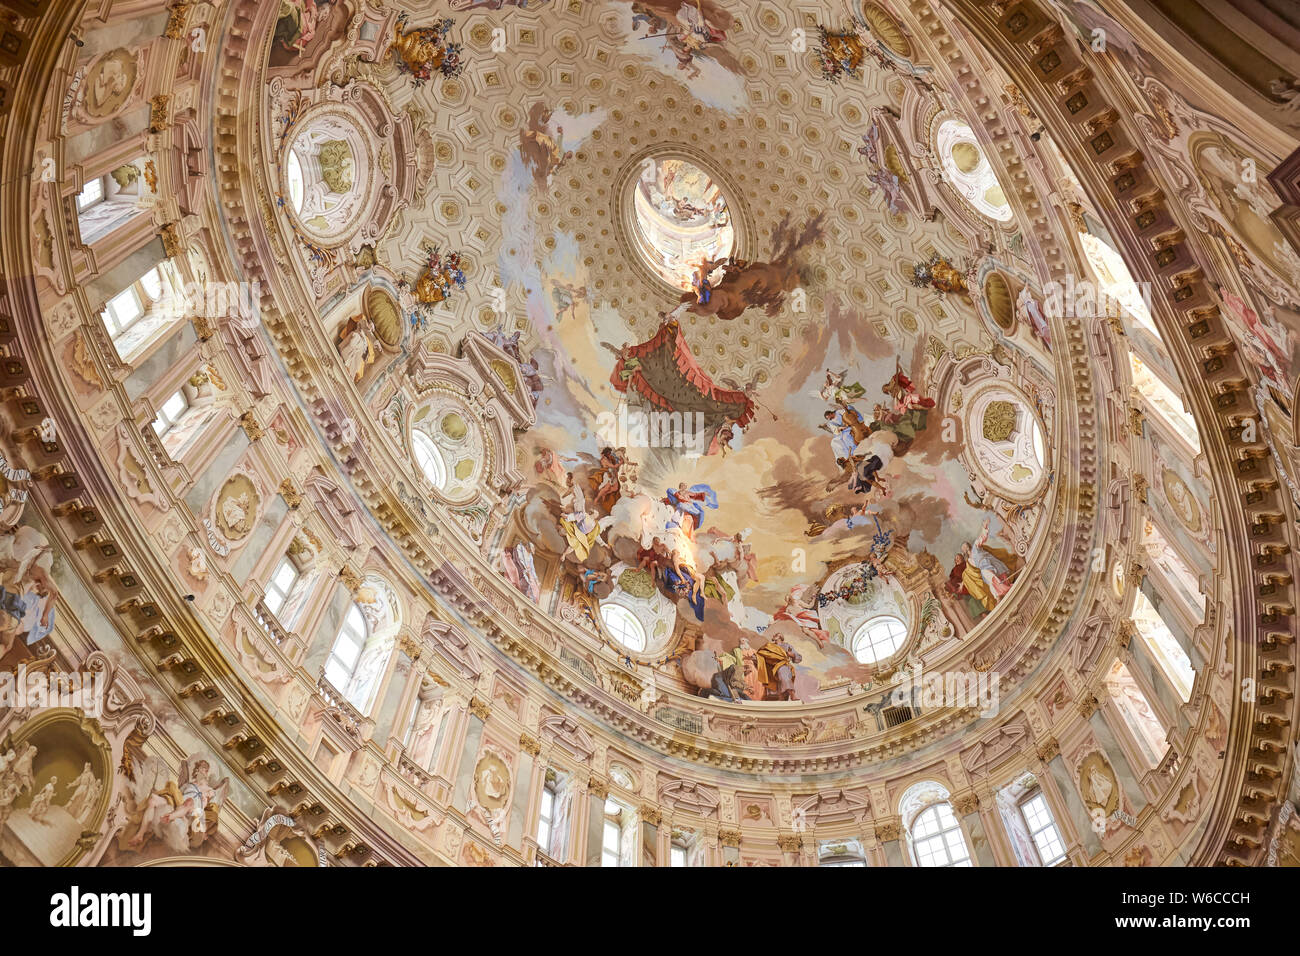 Vicoforte, Italien, 17. August 2016: Wallfahrtskirche von Vicoforte elliptische barocken Kuppel mit Fresken in Piemont, Italien Stockfoto